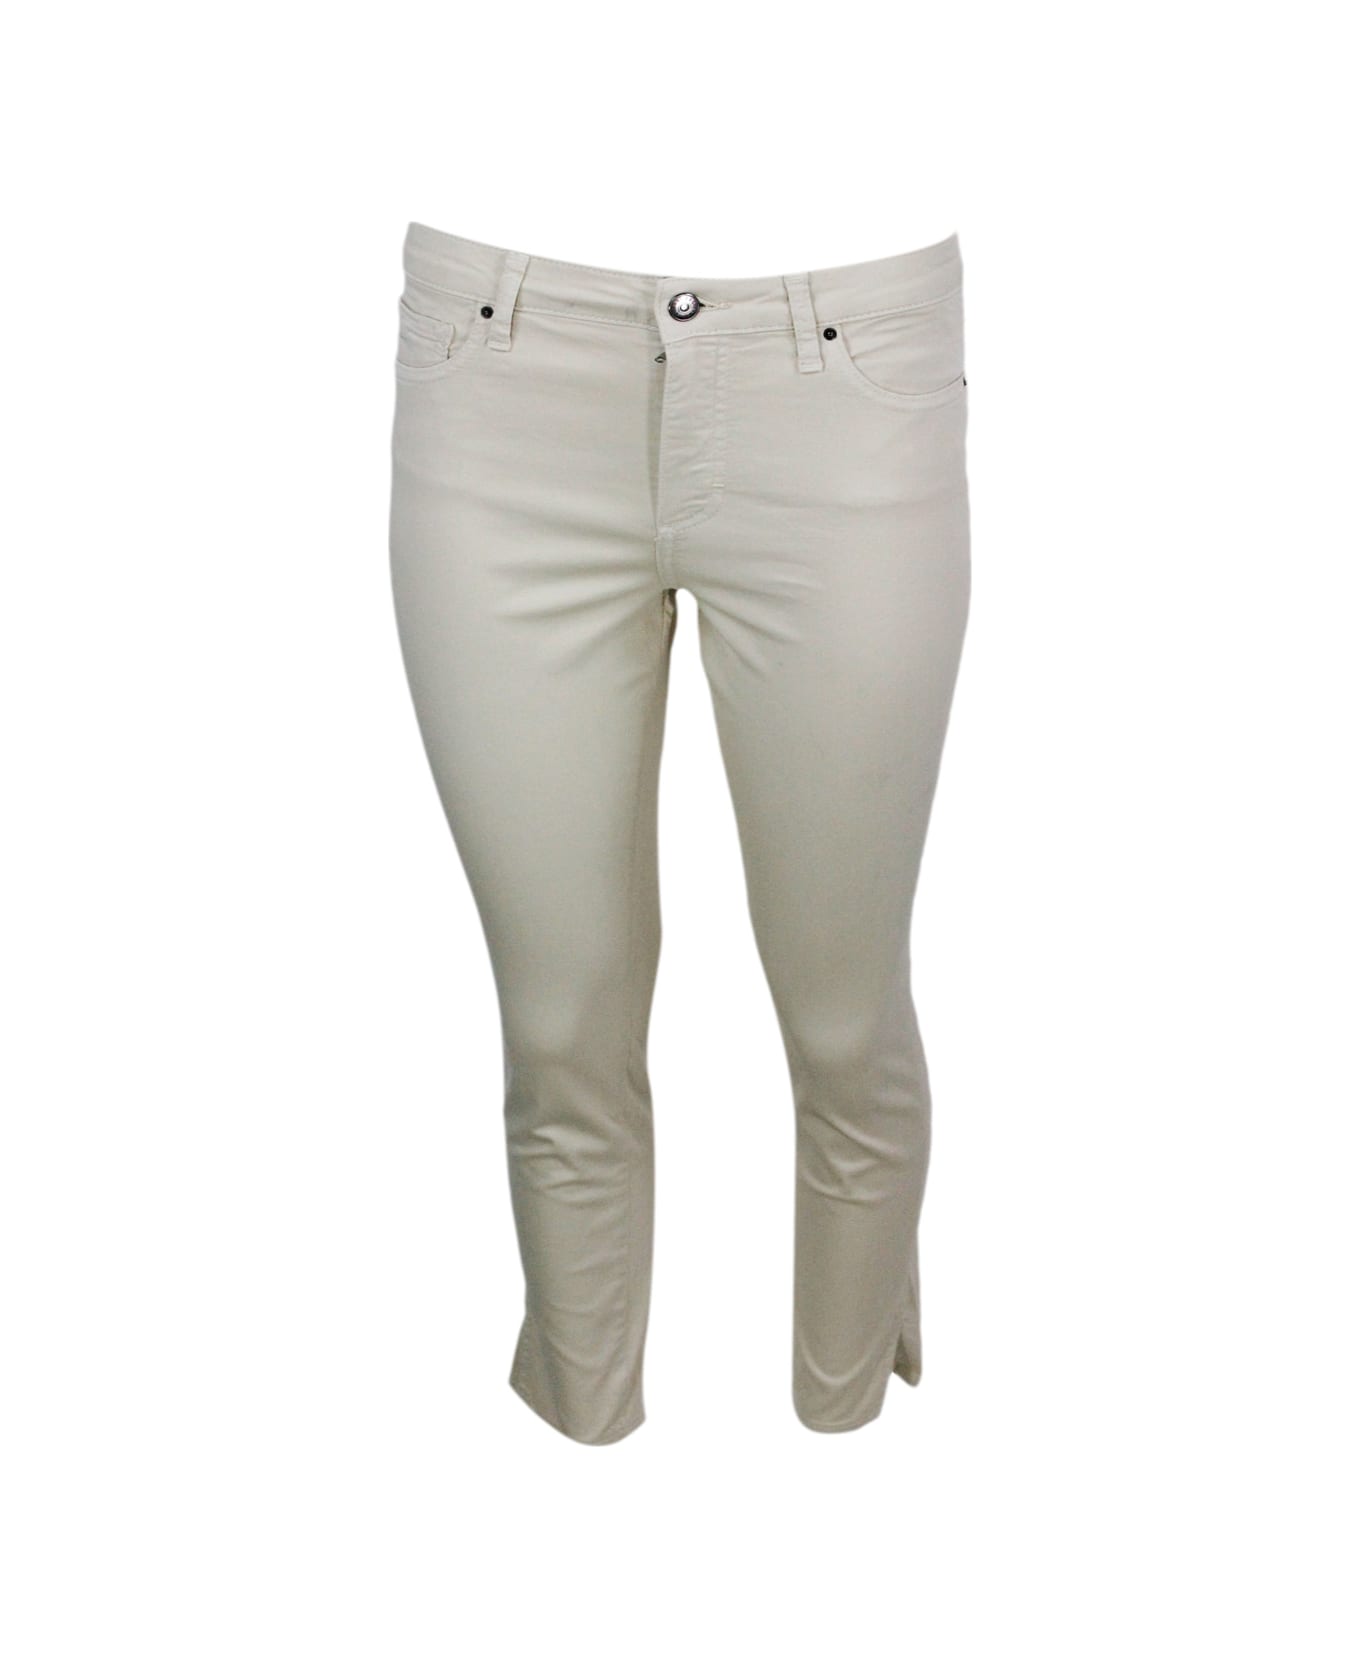 Armani Collezioni 5-pocket Trousers In Soft Stretch Cotton Super Skinny Capri. Zip And Button Closure. - Beige ボトムス